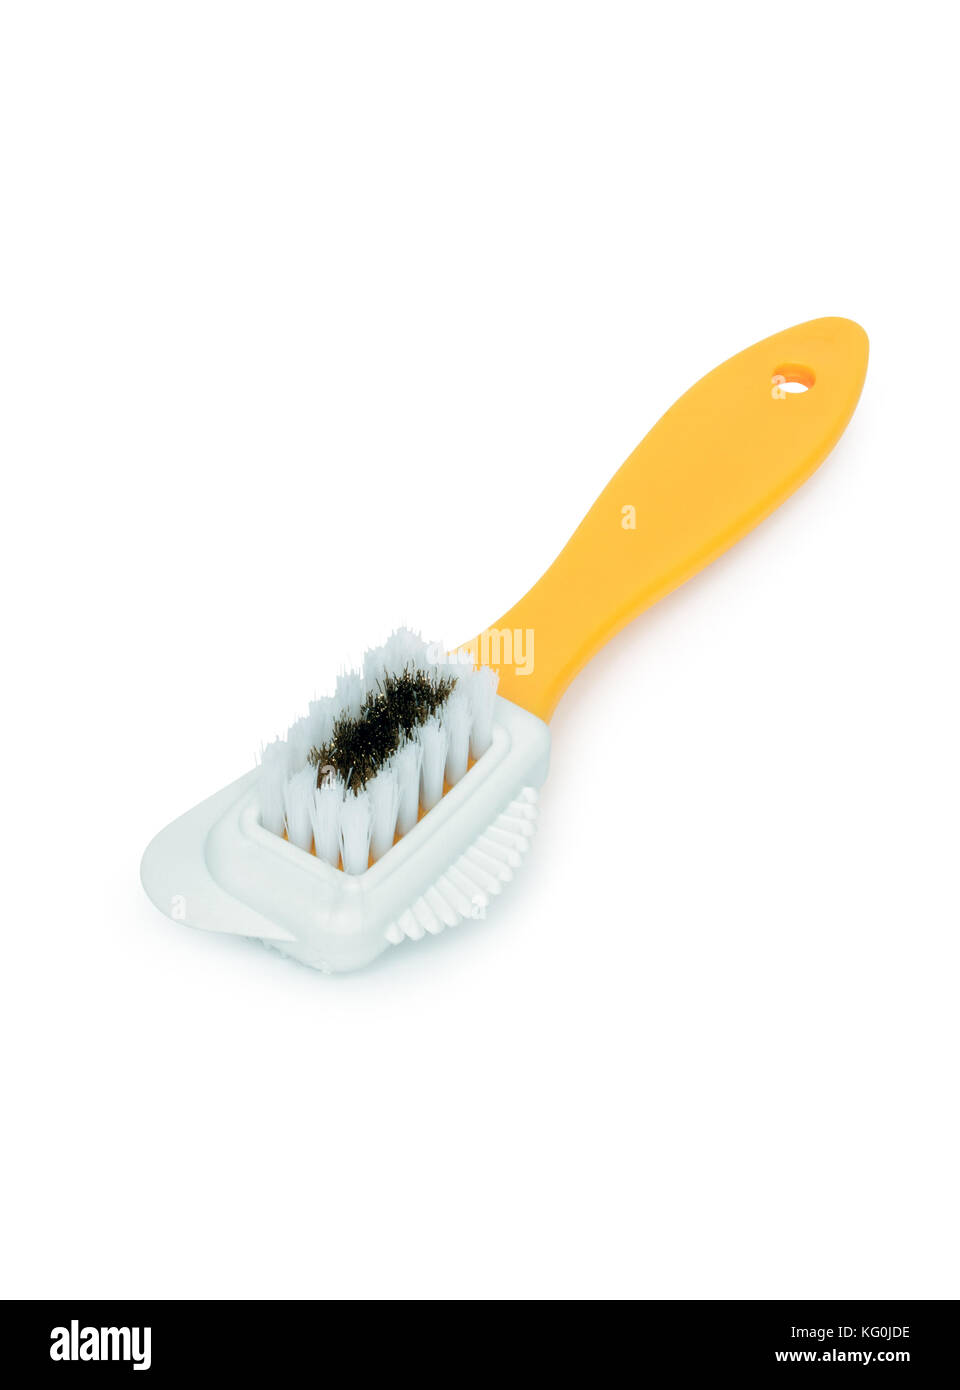 Modern plastic shoe brush isolated on white background Stock Photo